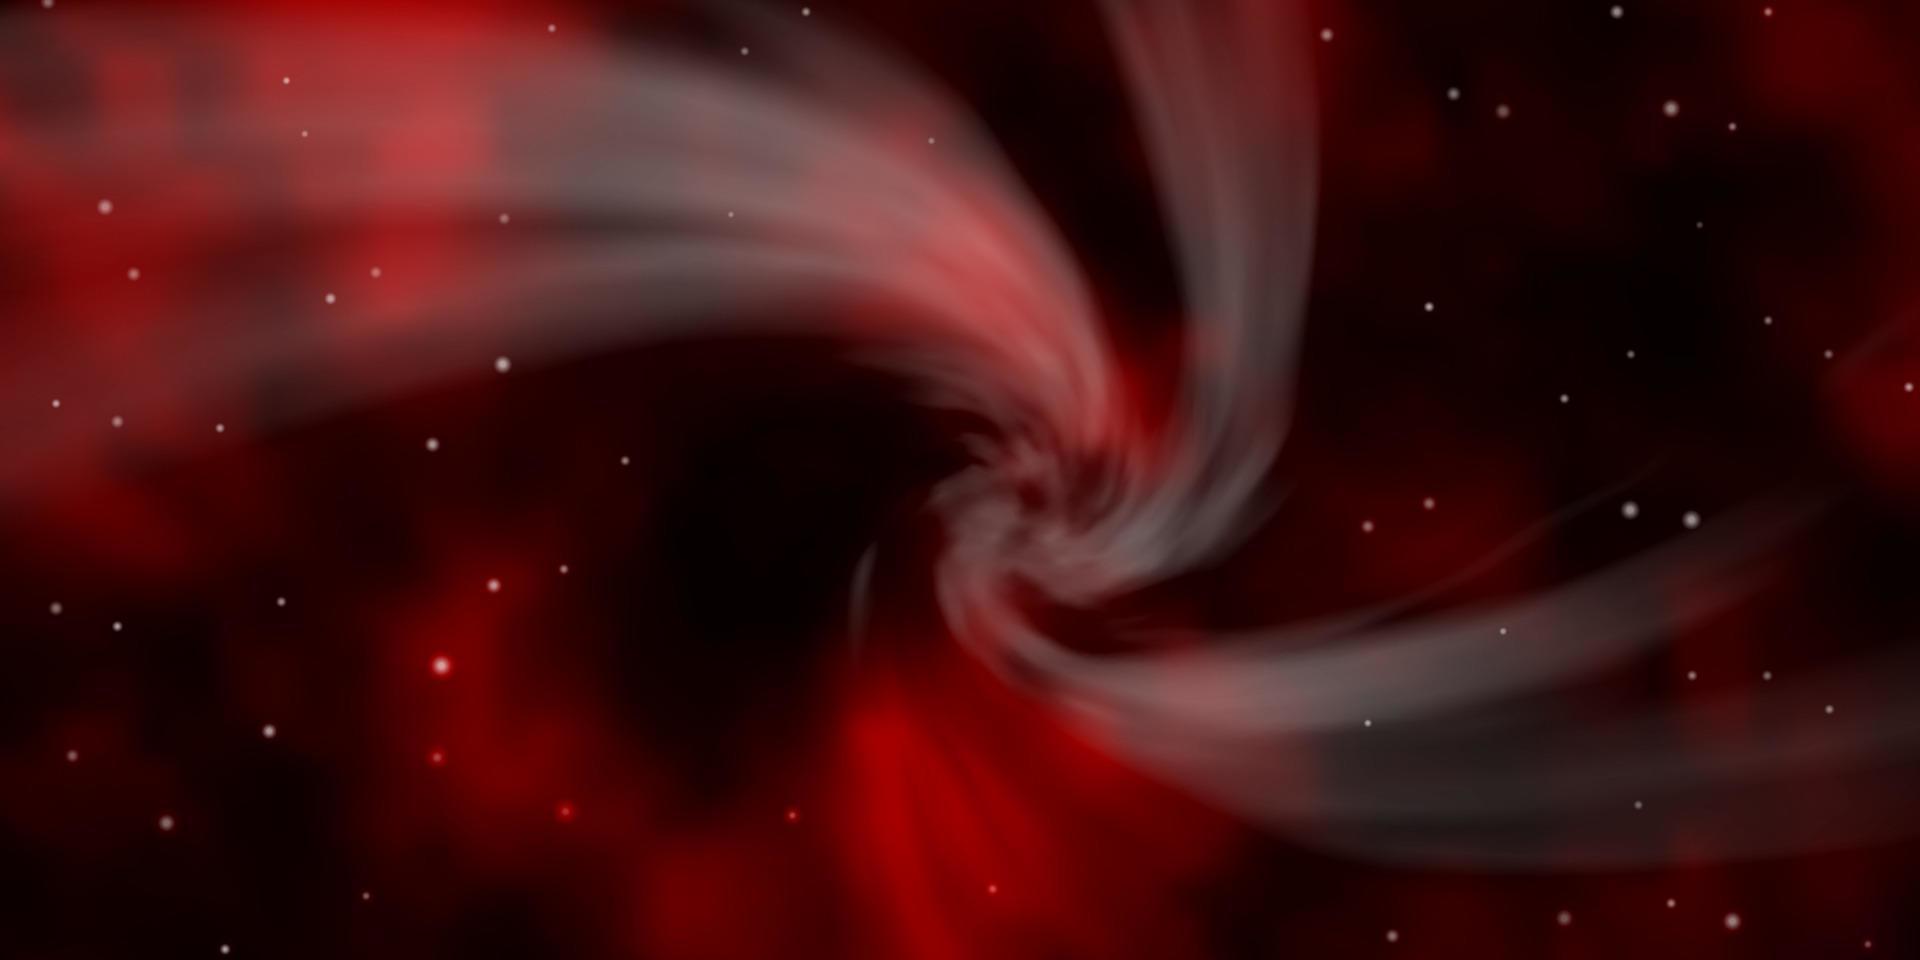 mörk röd vektor bakgrund med färgglada stjärnor.